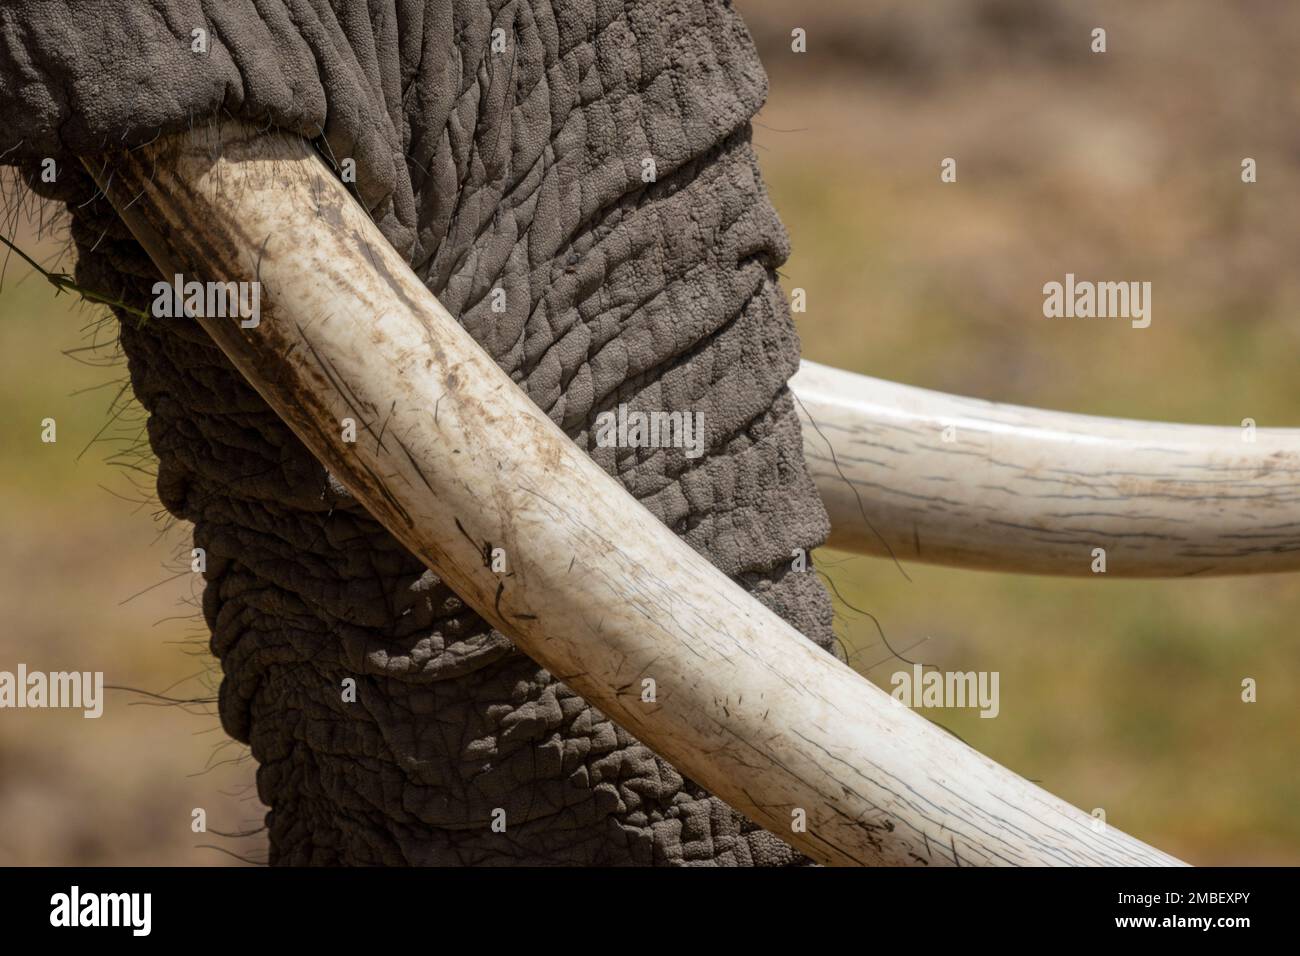 Nahaufnahme von Rumpf und Stoßzähnen des afrikanischen Buschelefanten (Loxodonta africana), Amboseli Nationalpark. Kenia Stockfoto